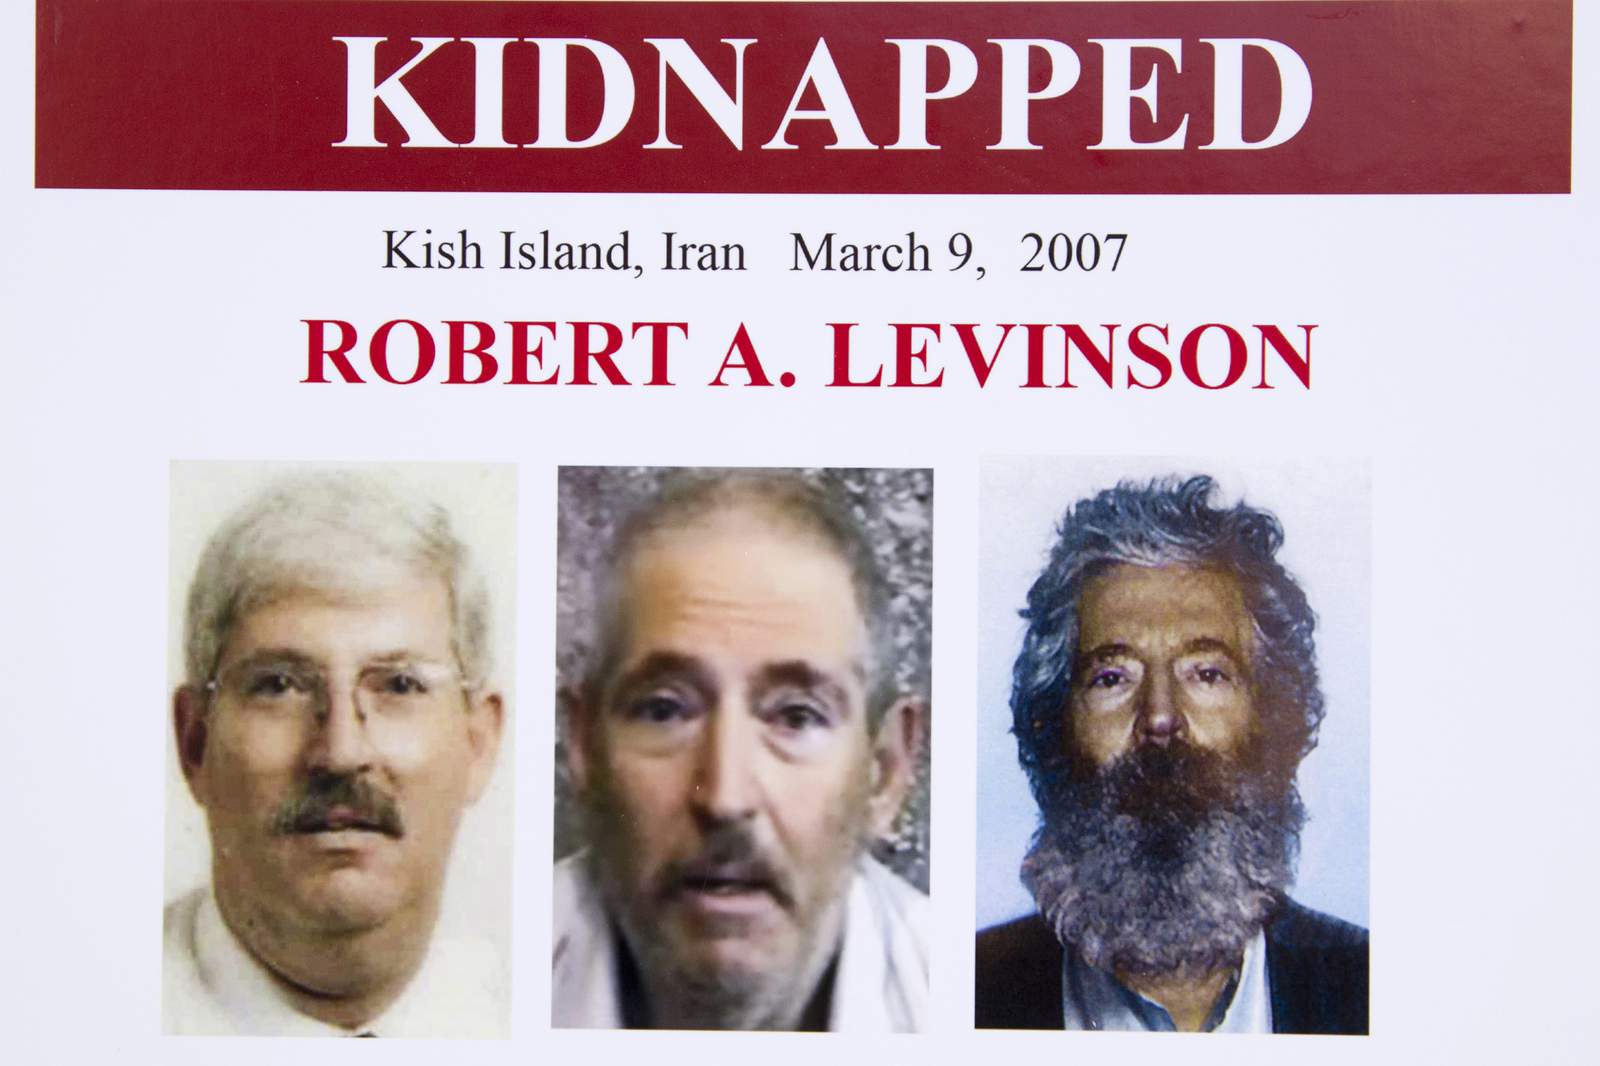 US blames Iran in abduction, death of ex-FBI agent Levinson